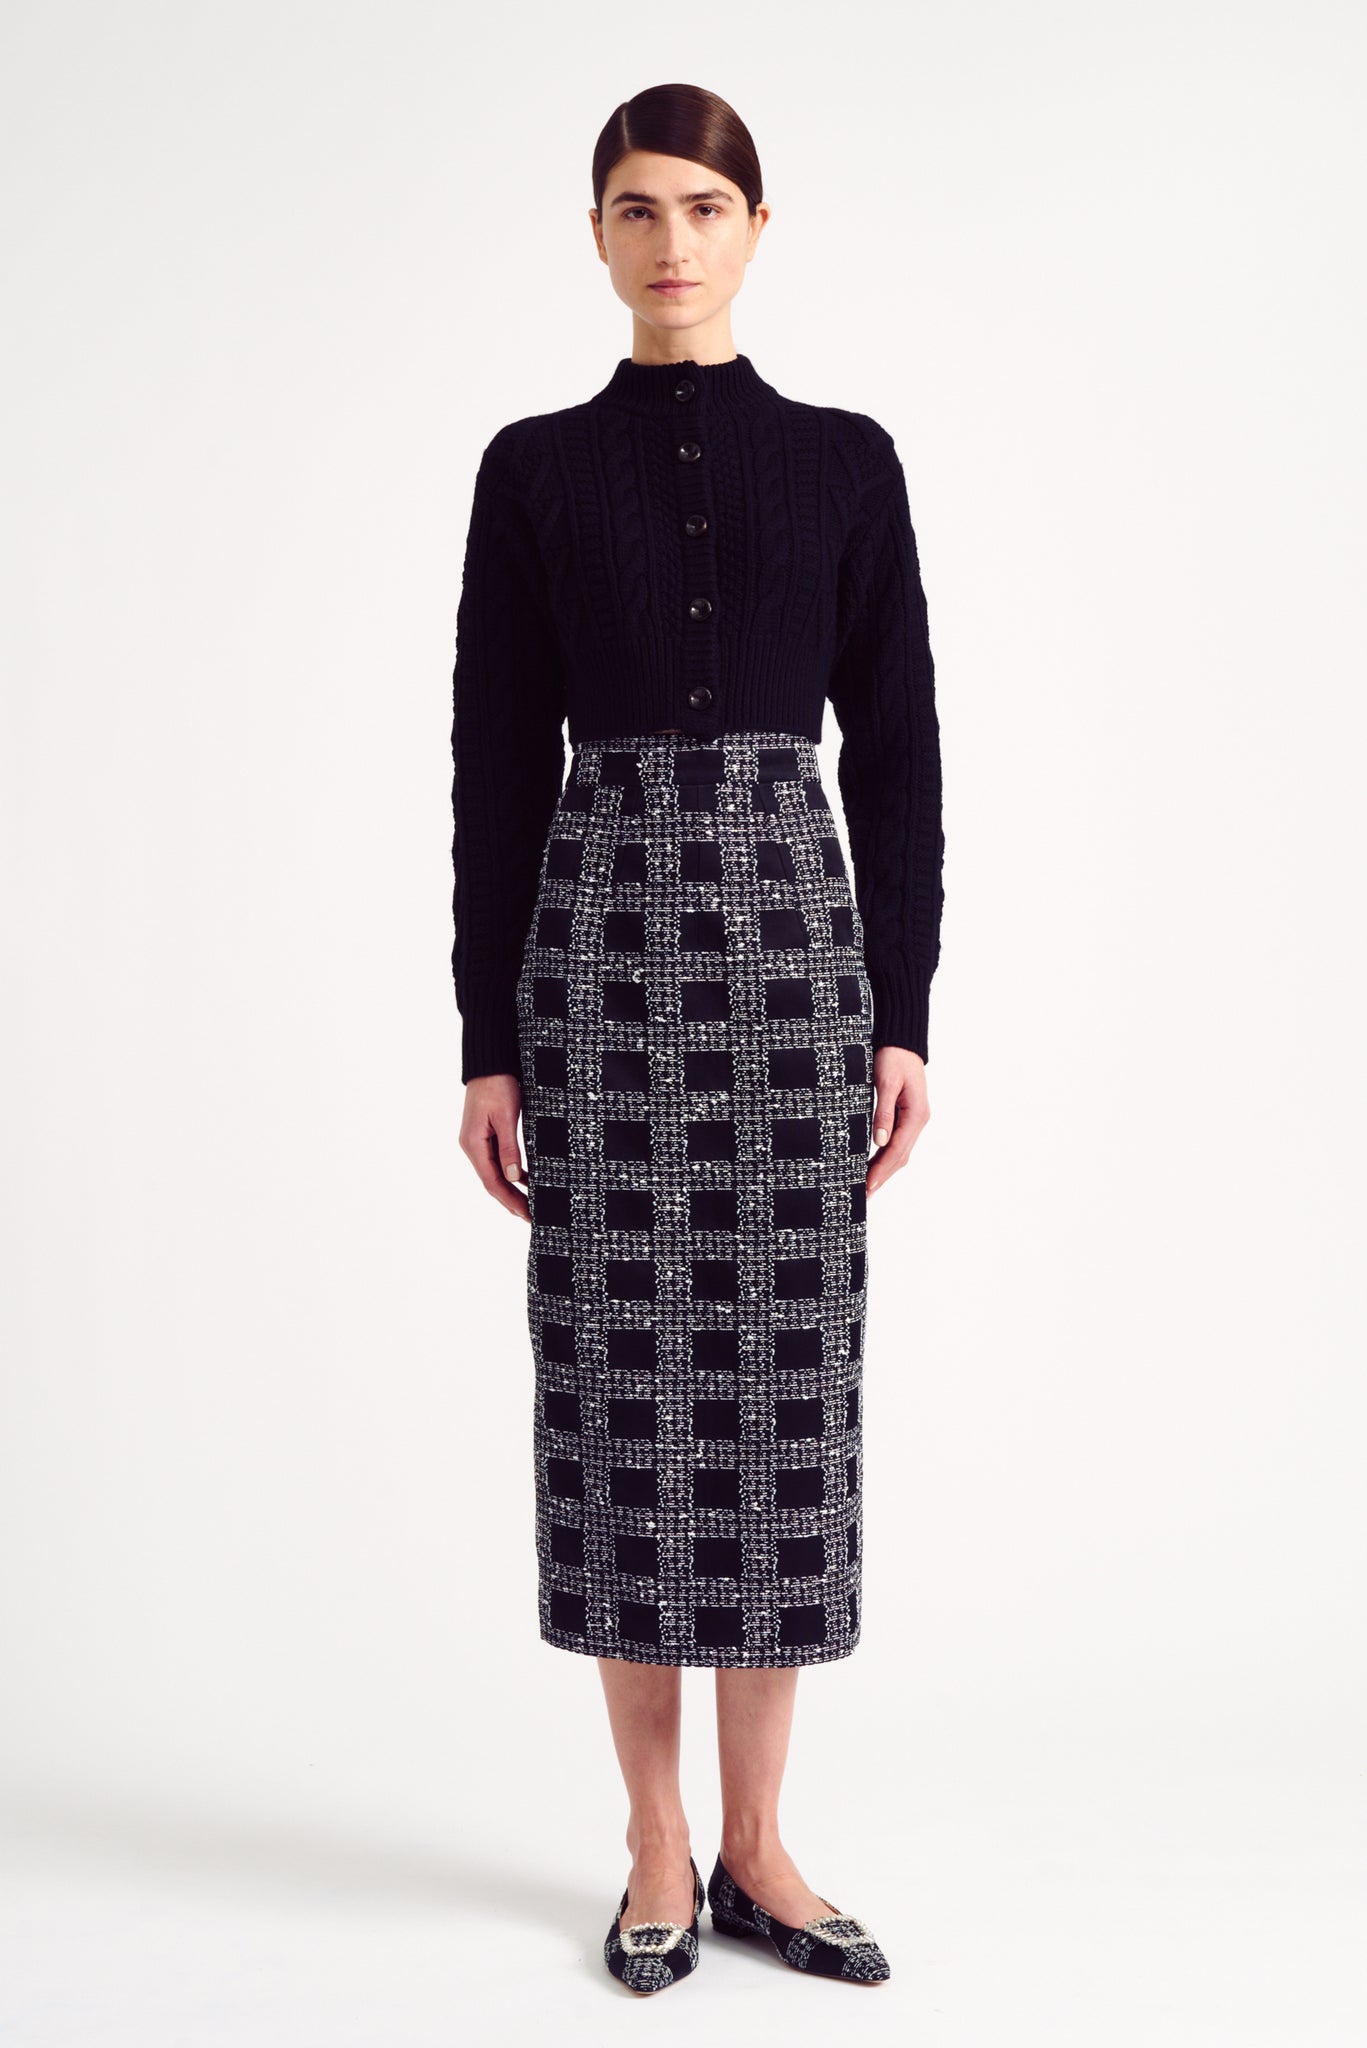 Larada Skirt in Black Faded Check | Emilia Wickstead